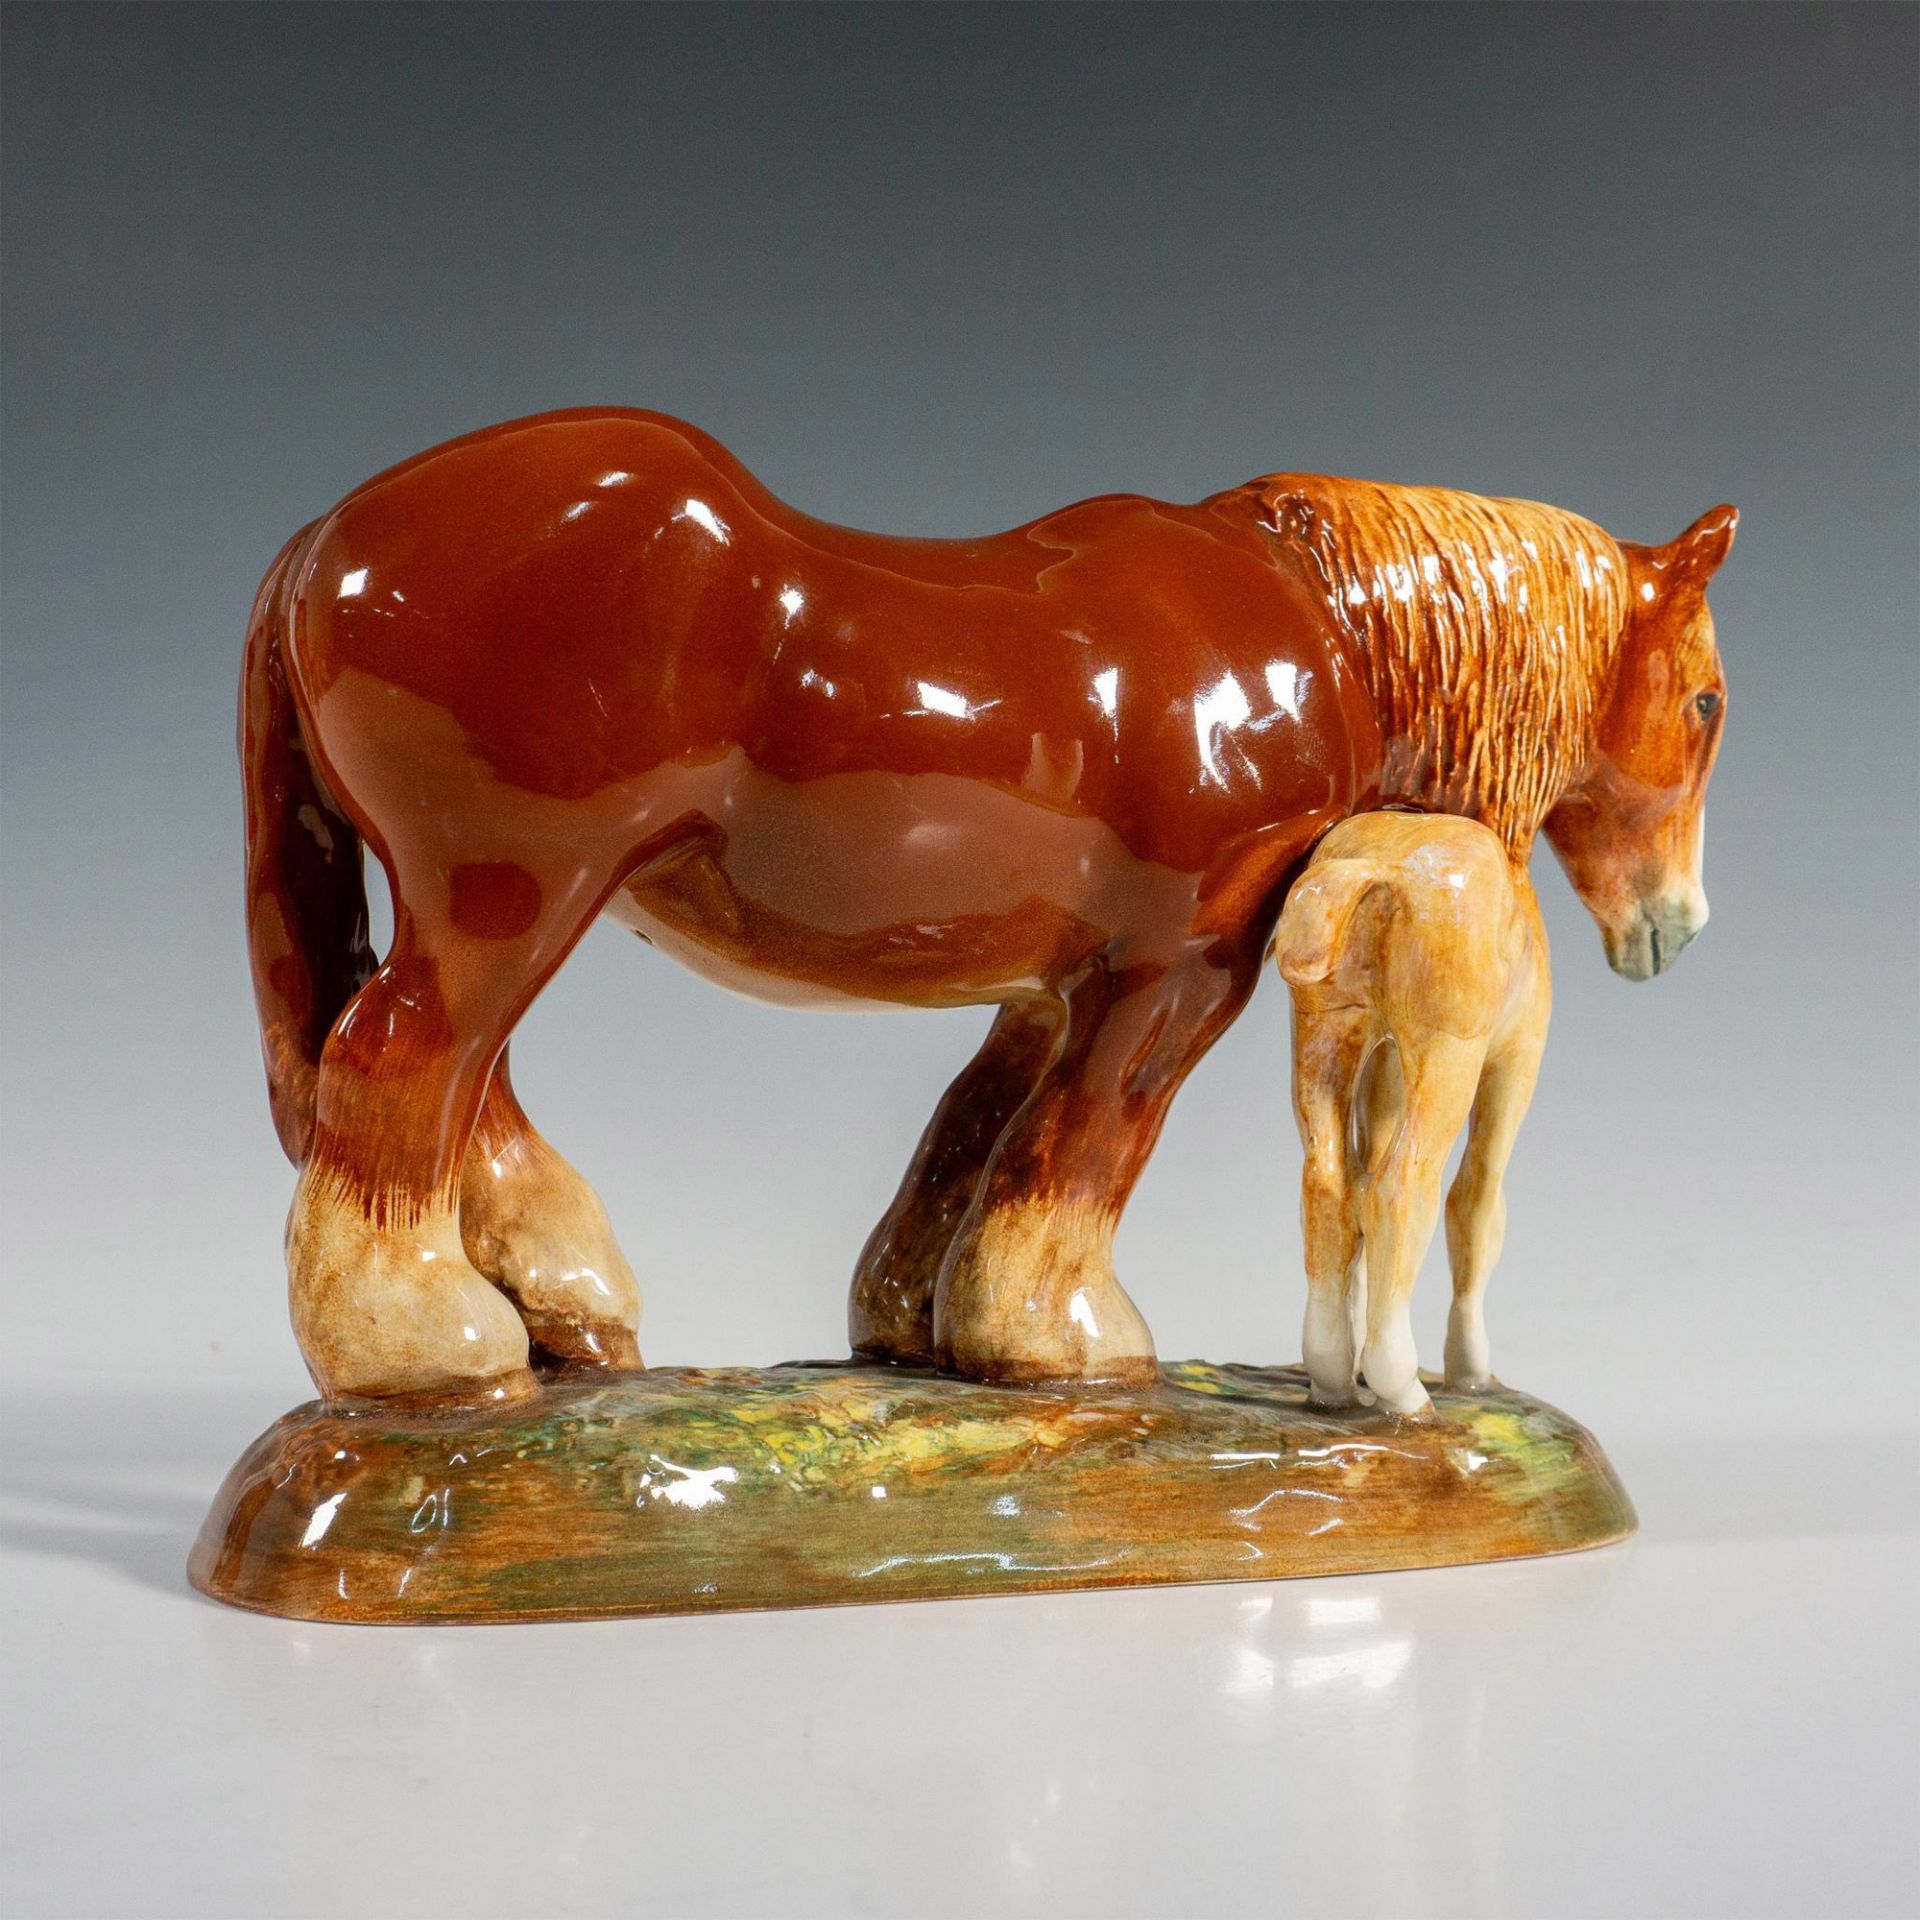 Royal Doulton Porcelain Horse Figurine, HN2522 - Image 4 of 5